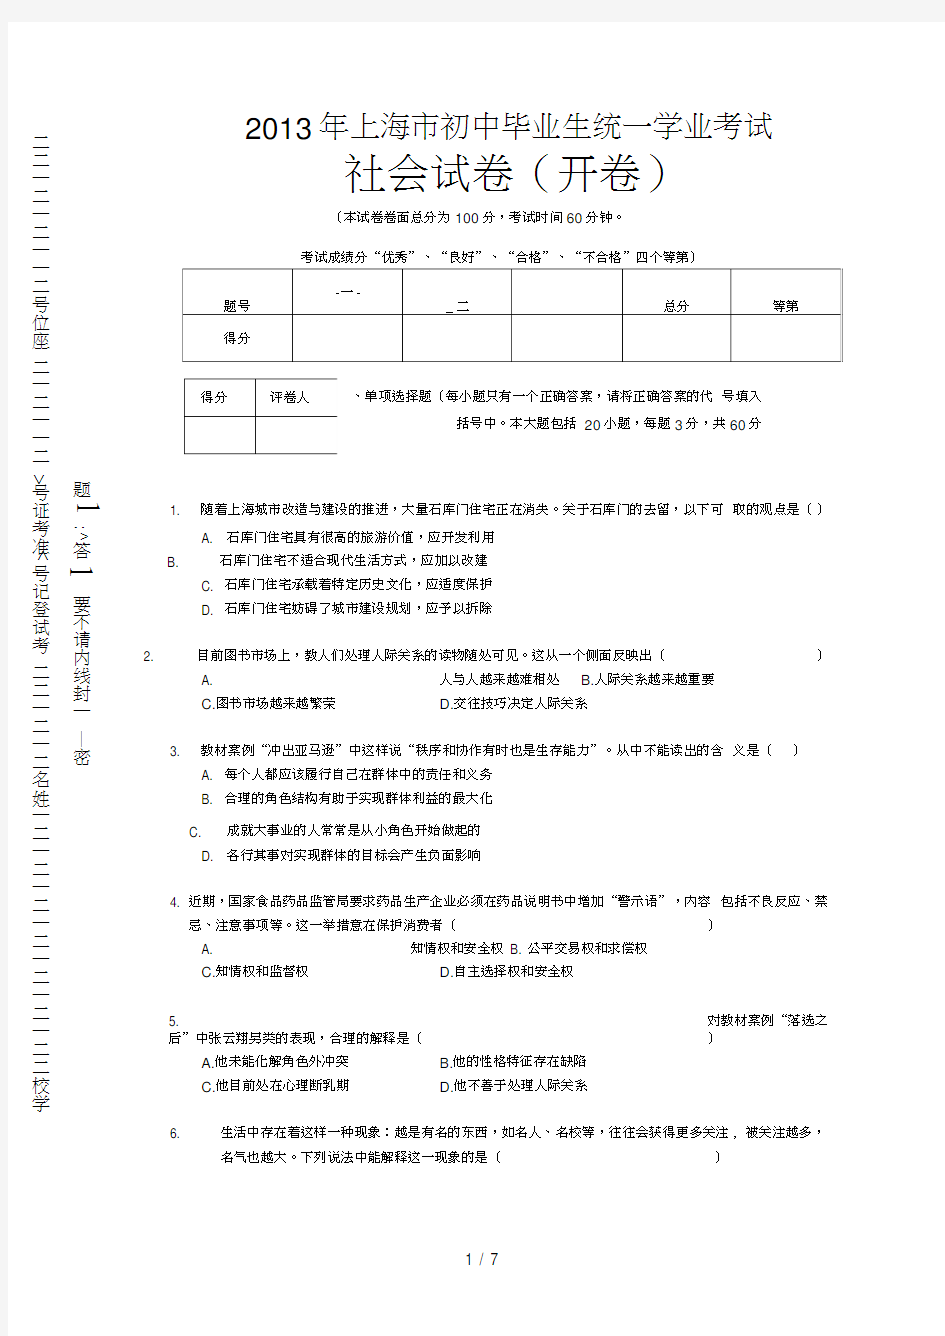 上海市初中毕业生统一学业考试社会学科试卷及答案